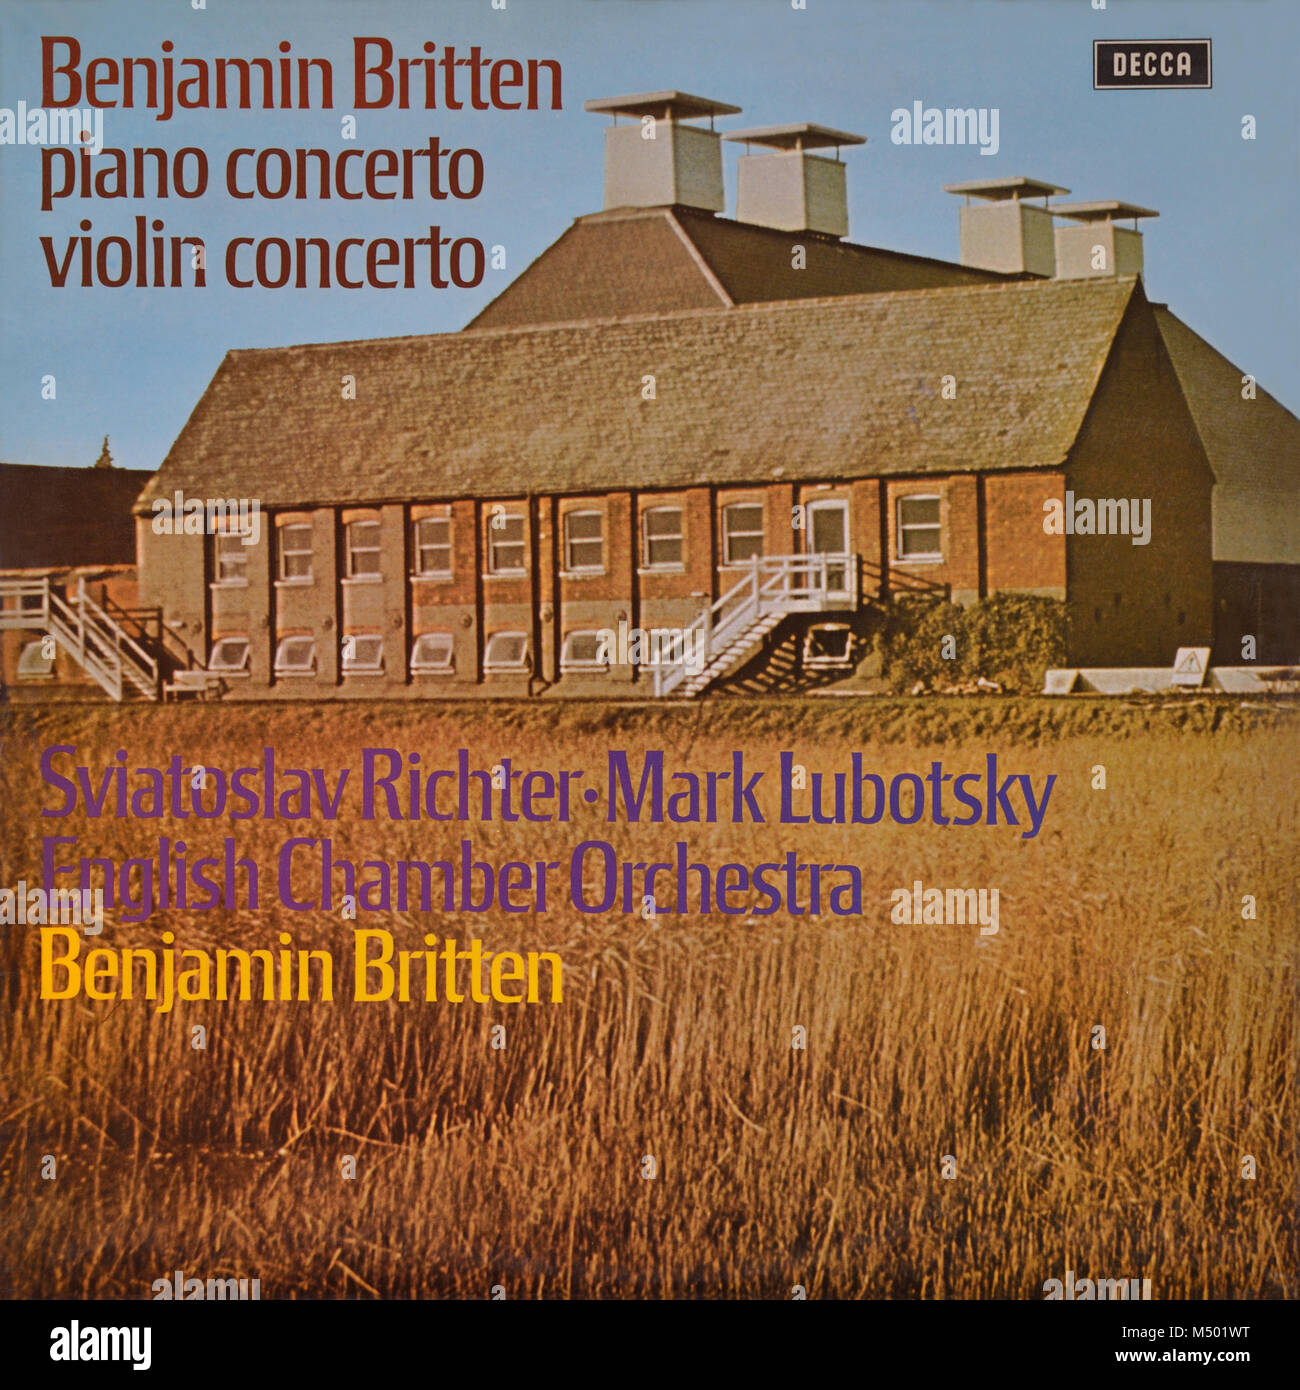 Benjamin Britten, Sviatoslav Richter, Mark Lubotsky, orchestre de chambre  anglais - pochette originale de l'album en vinyle - Concerto pour piano /  Concerto pour violon - 1971 Photo Stock - Alamy